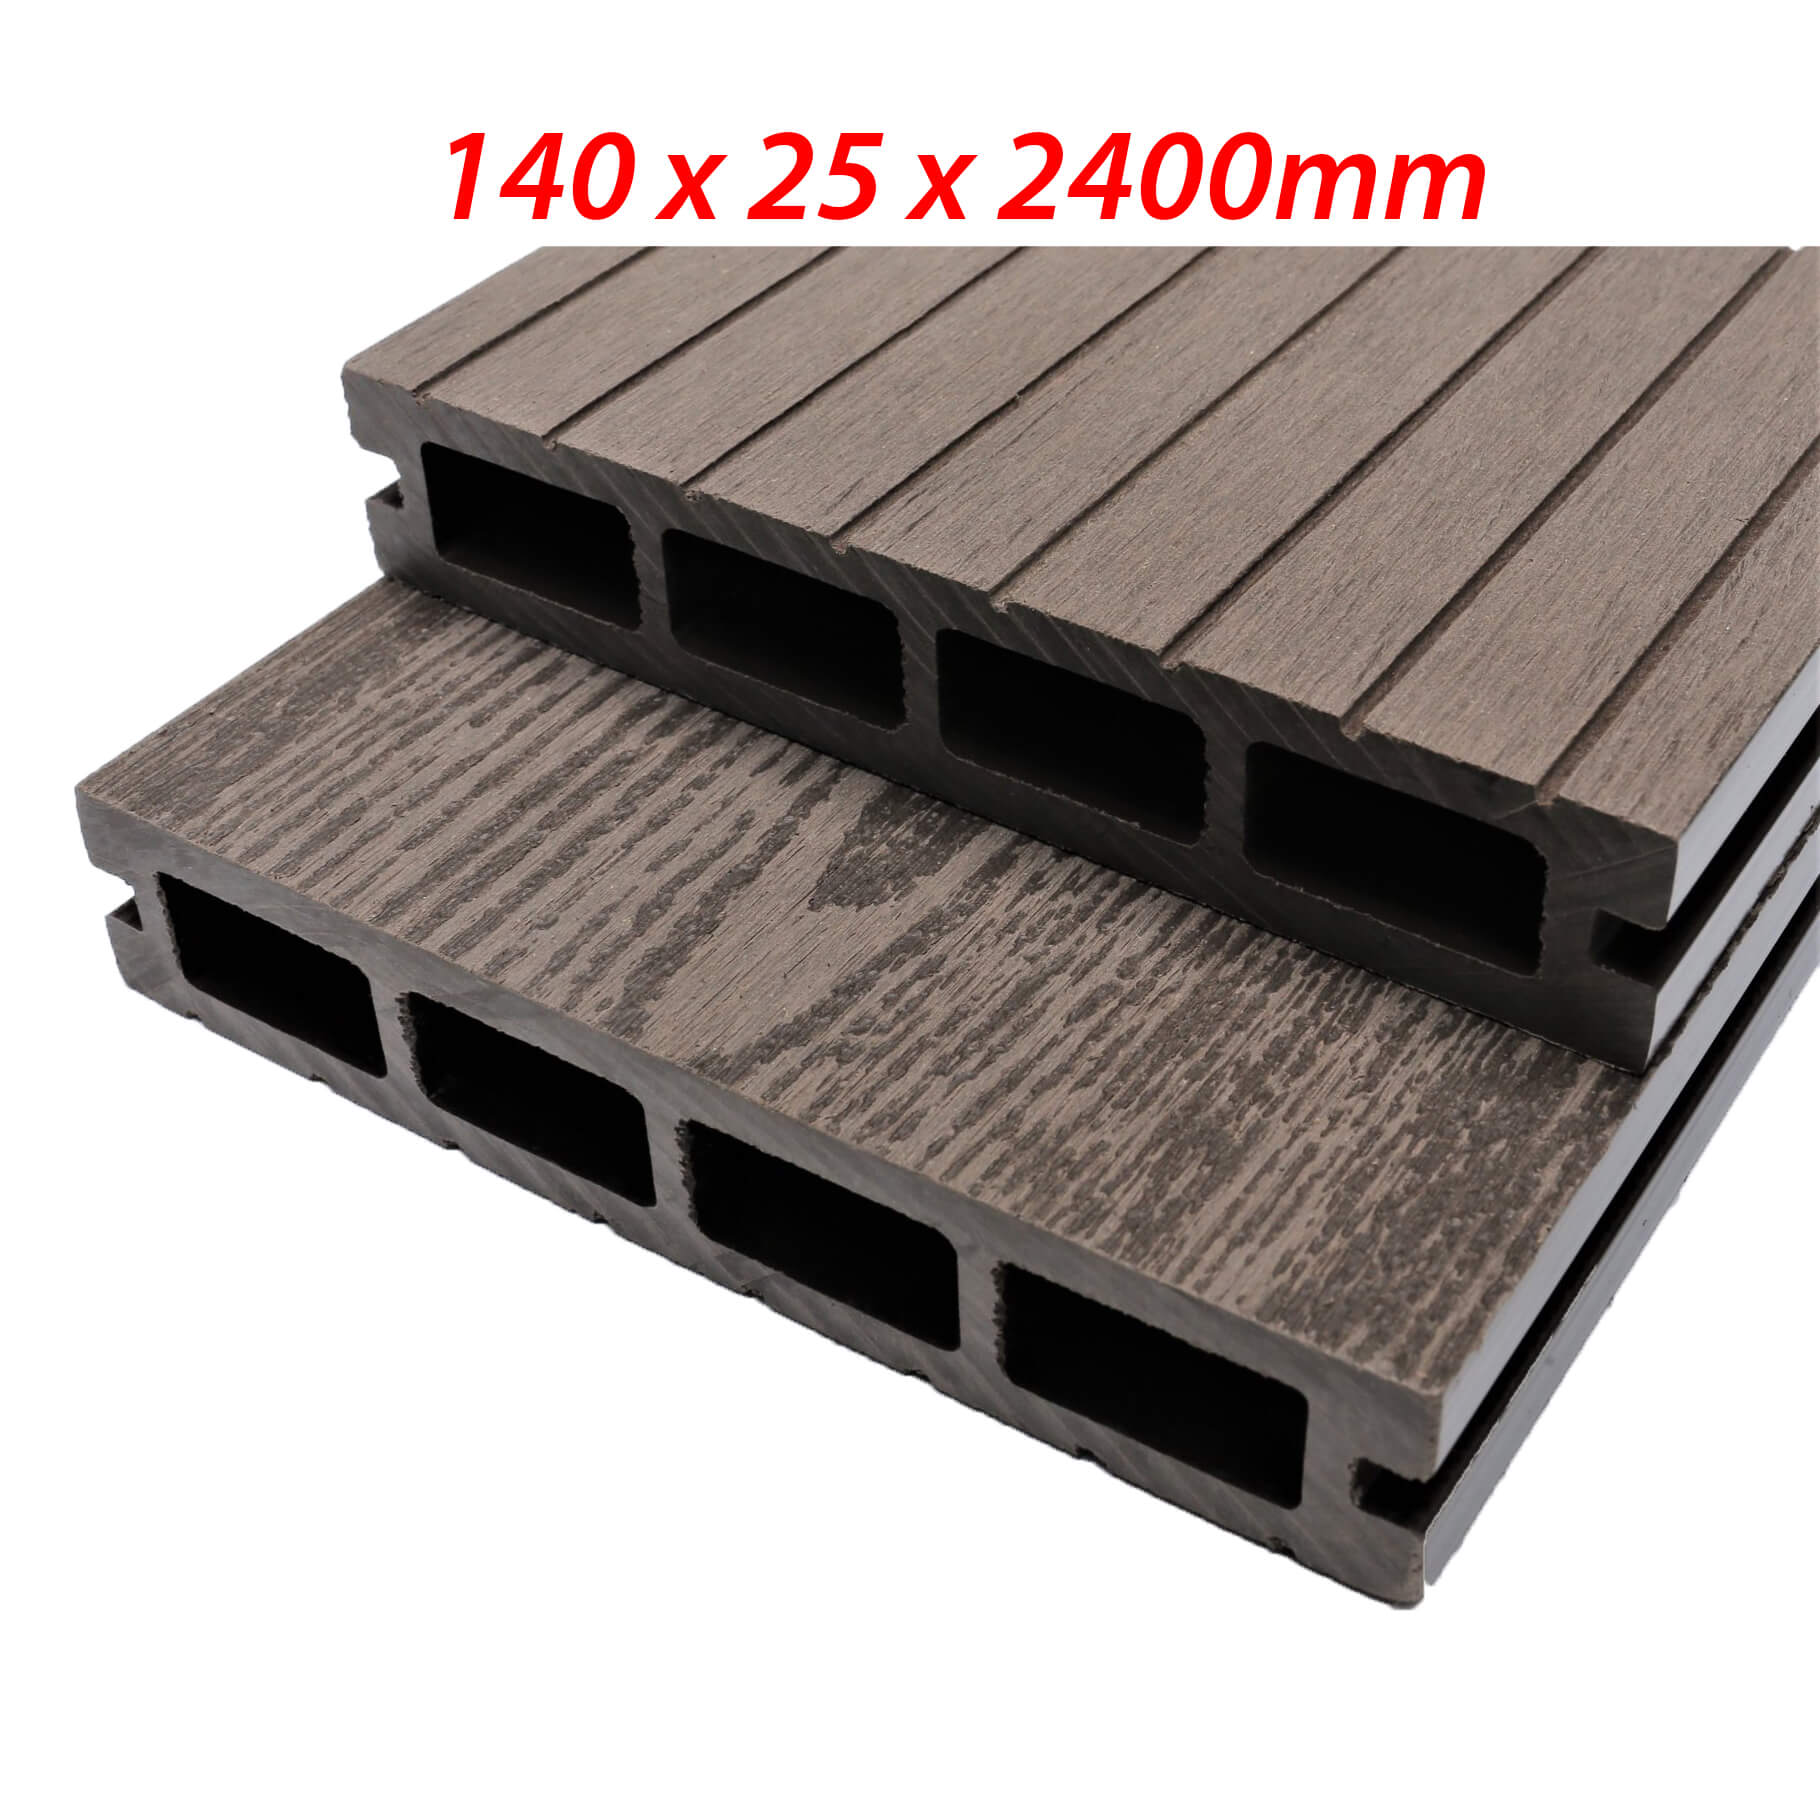 Sàn gỗ nhựa ngoài trời cao cấp kt 140 x 25 x 2400mm